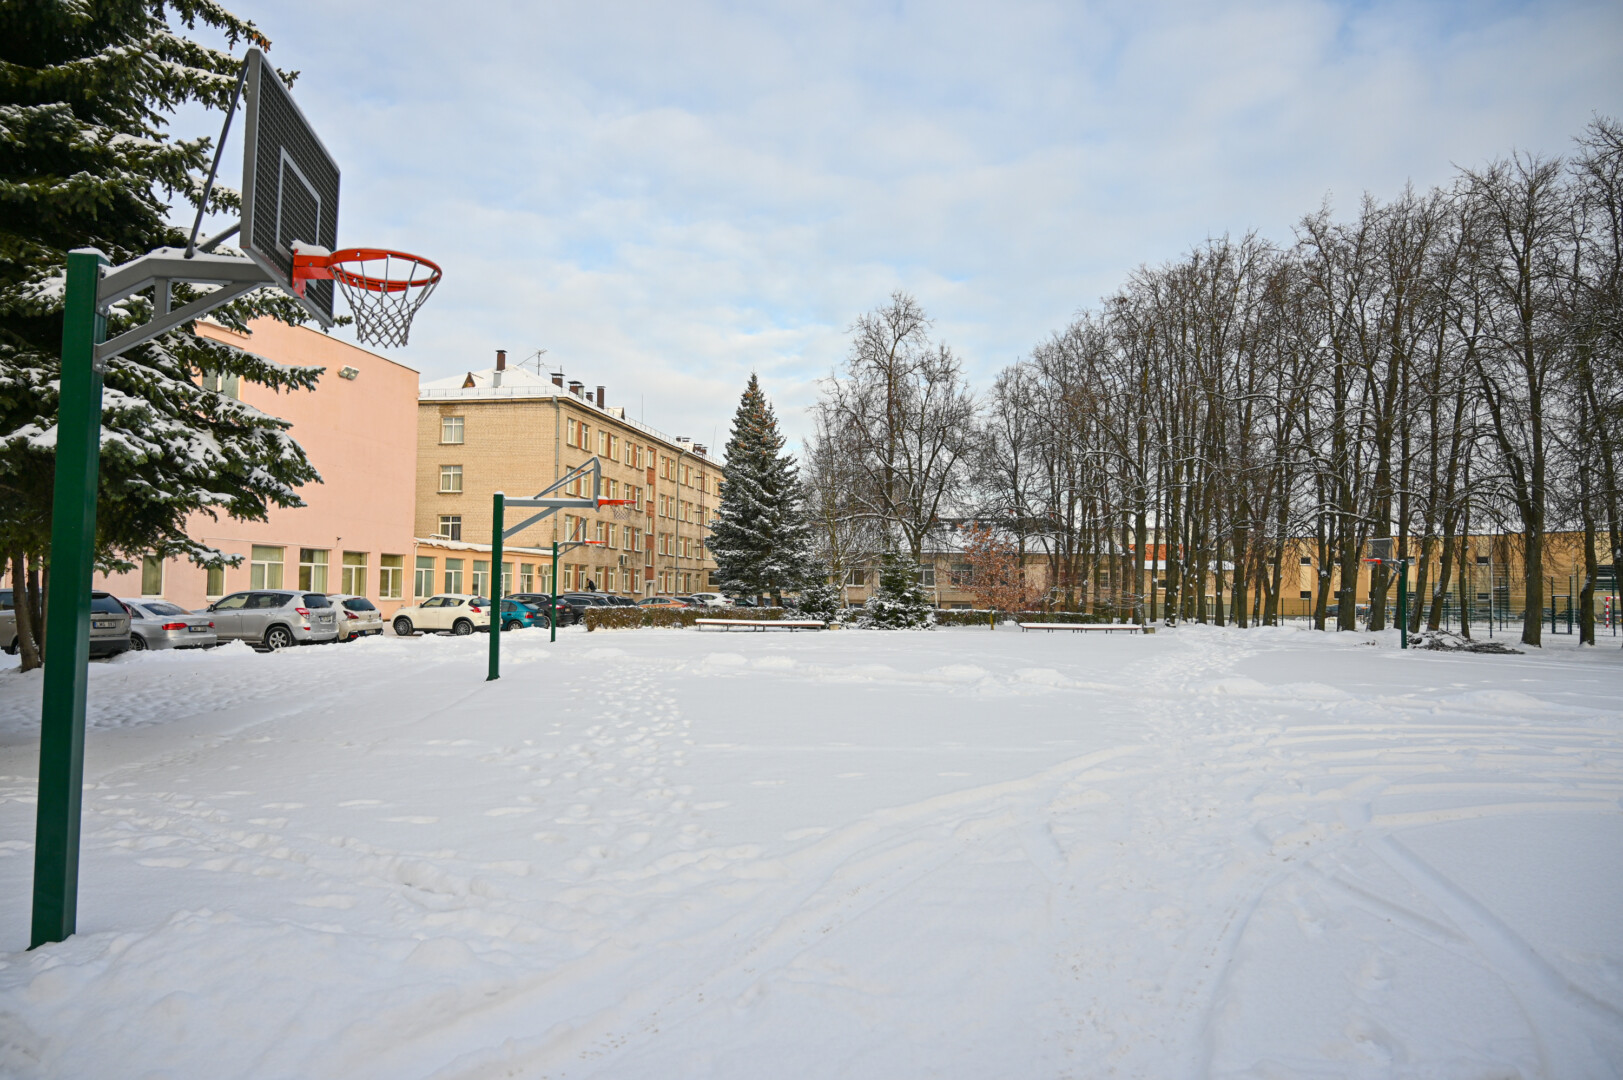 Universalios sporto salės priestatas iškils gimnazijos vidiniame kiemelyje vietoj dabar ten esančių krepšinio aikštelių. P. ŽIDONIO nuotr. 